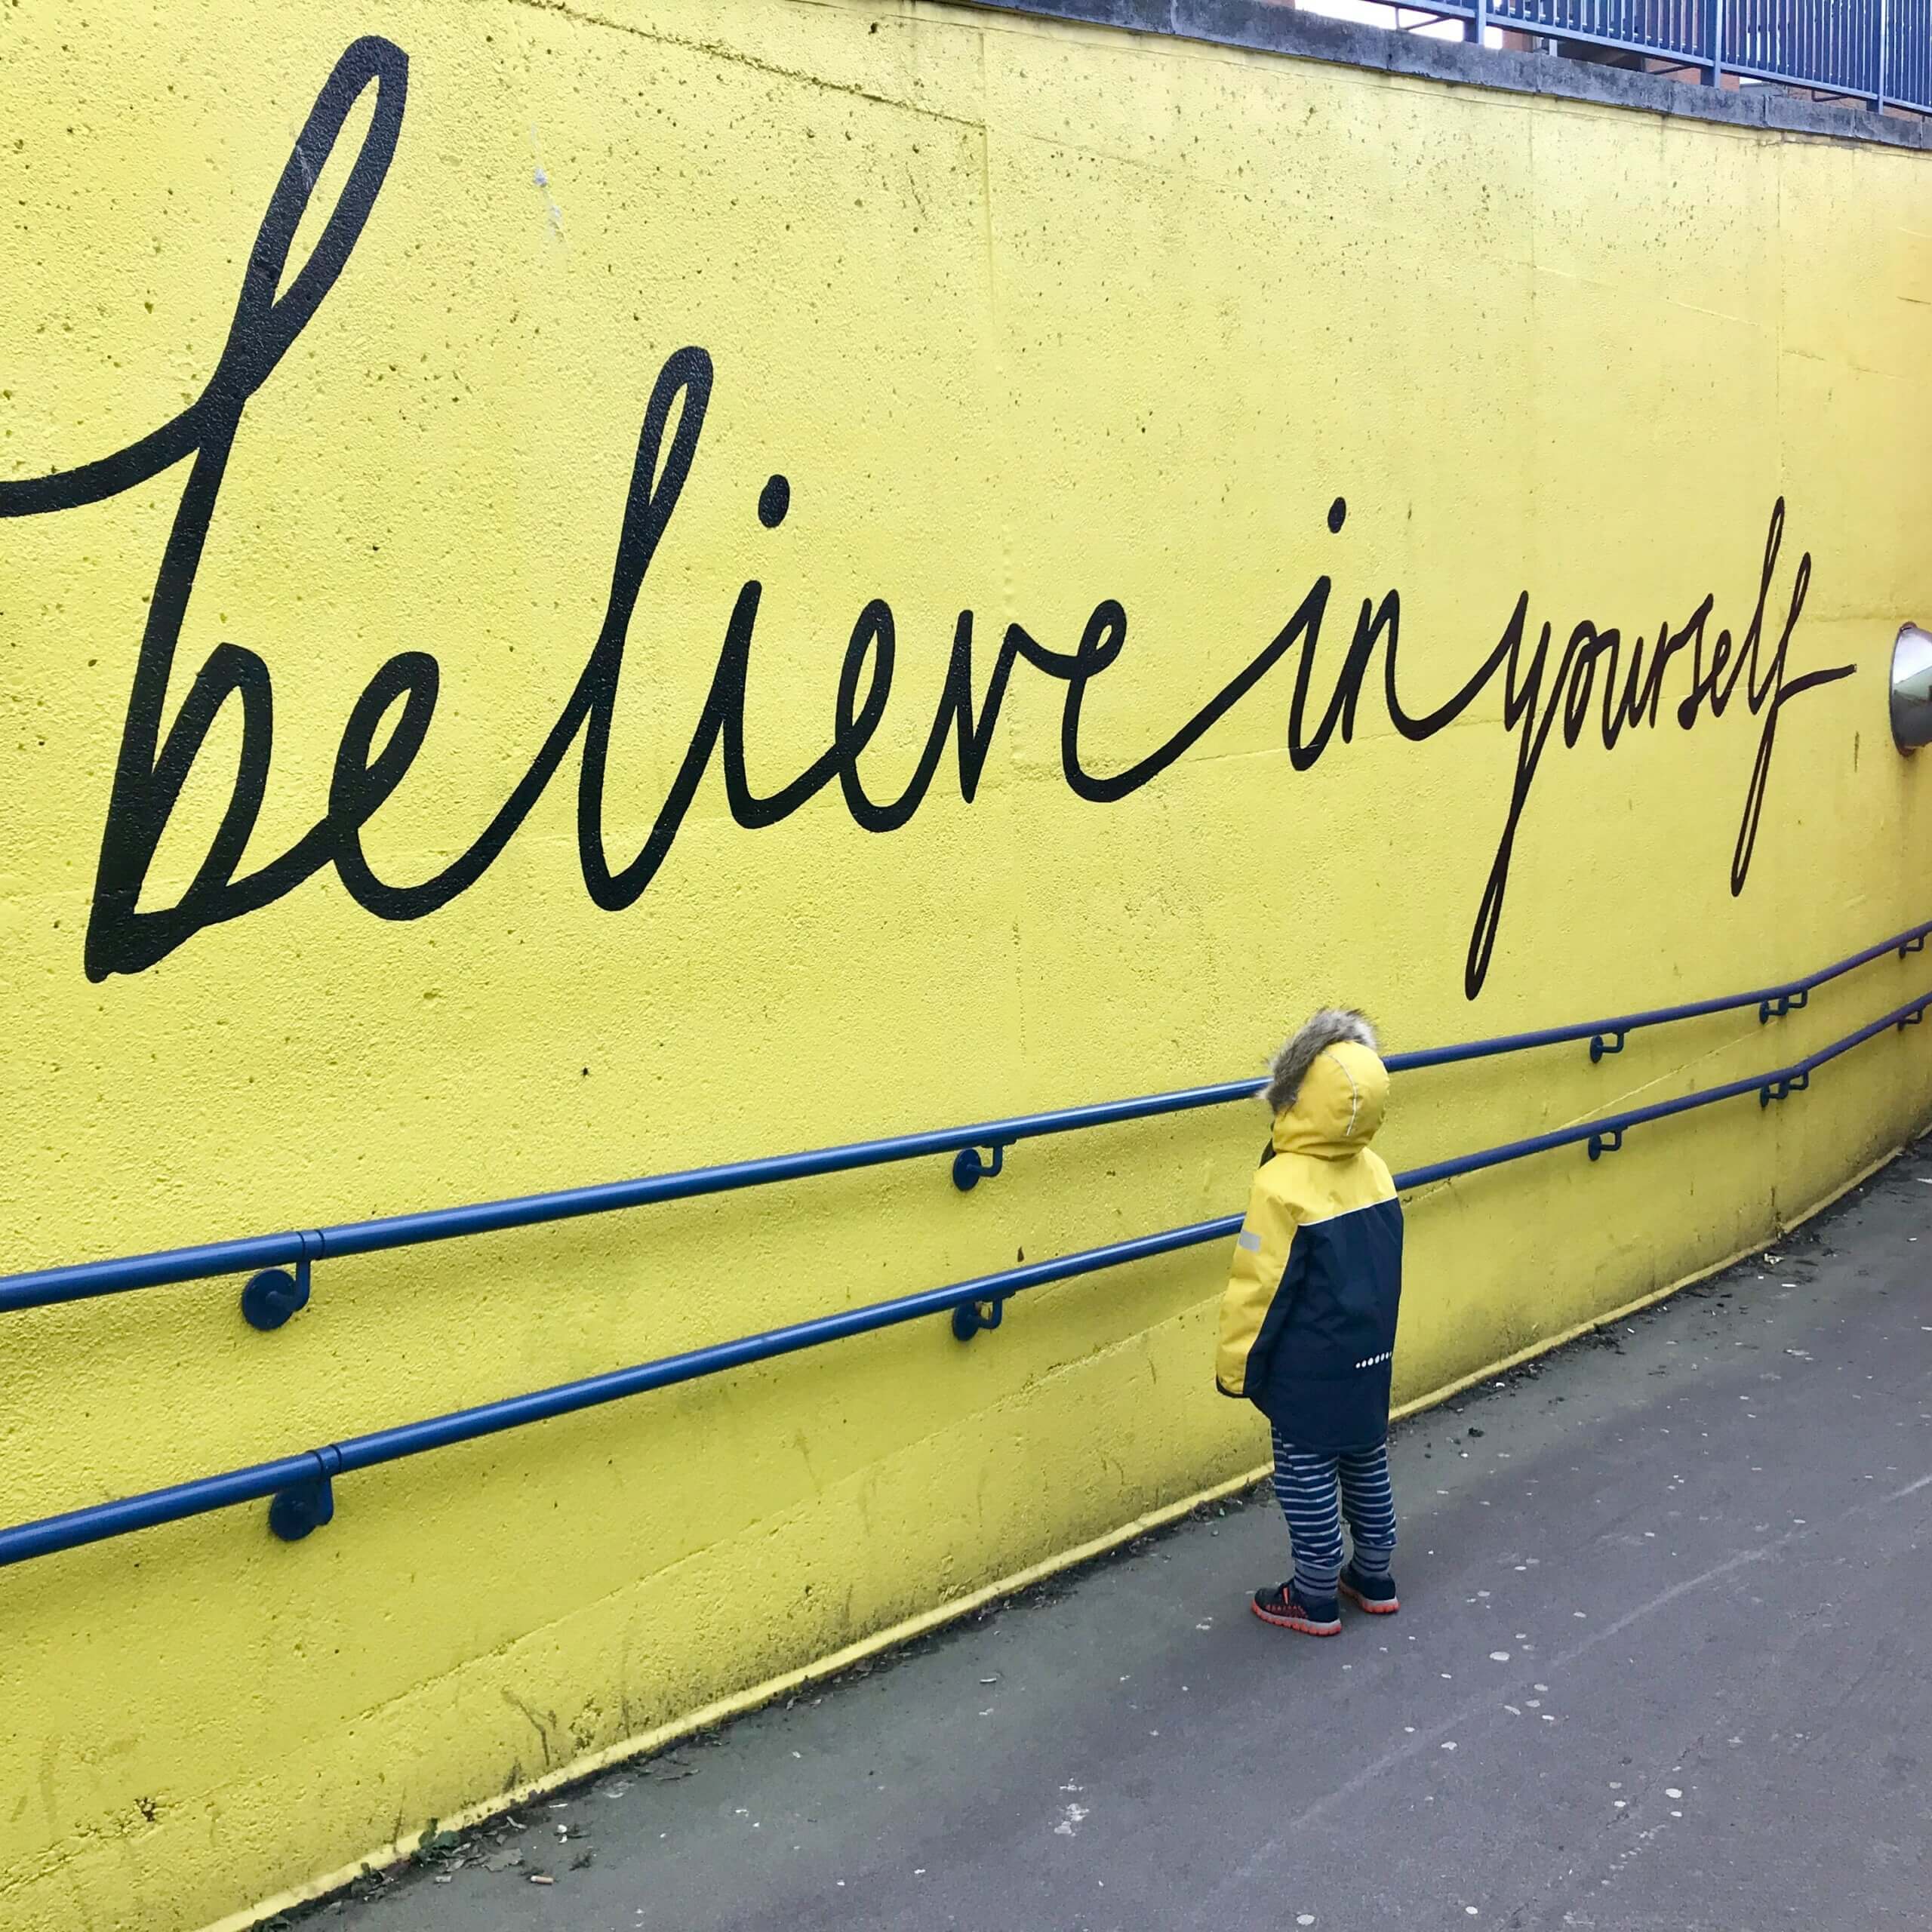 Ein Kind in gelber Jacke steht vor einer gelben Wand, auf der "Believe in yourself" steht